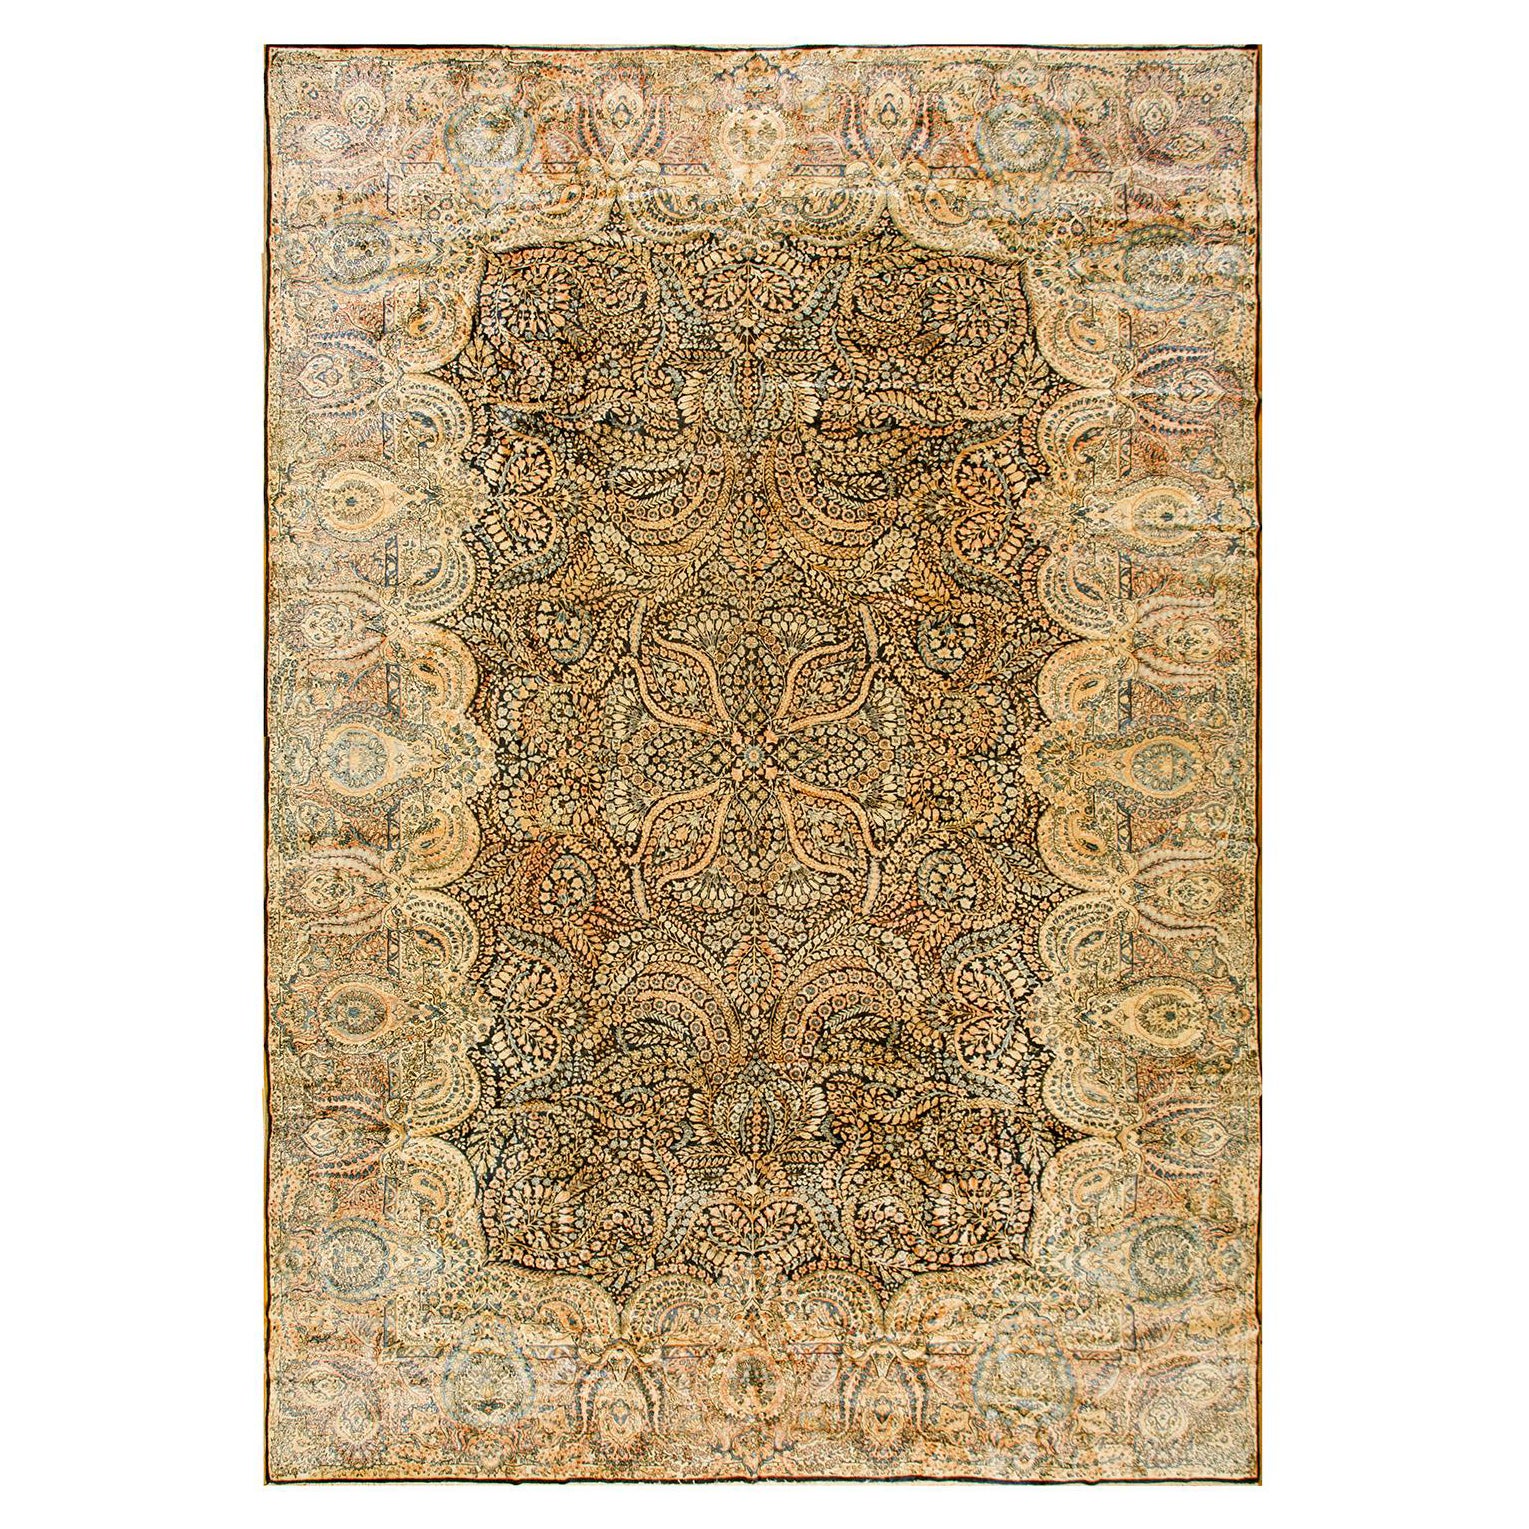 1930s Persian Millefleur Kerman Carpet ( 11'" x 17'4" - 358 x 528 cm )